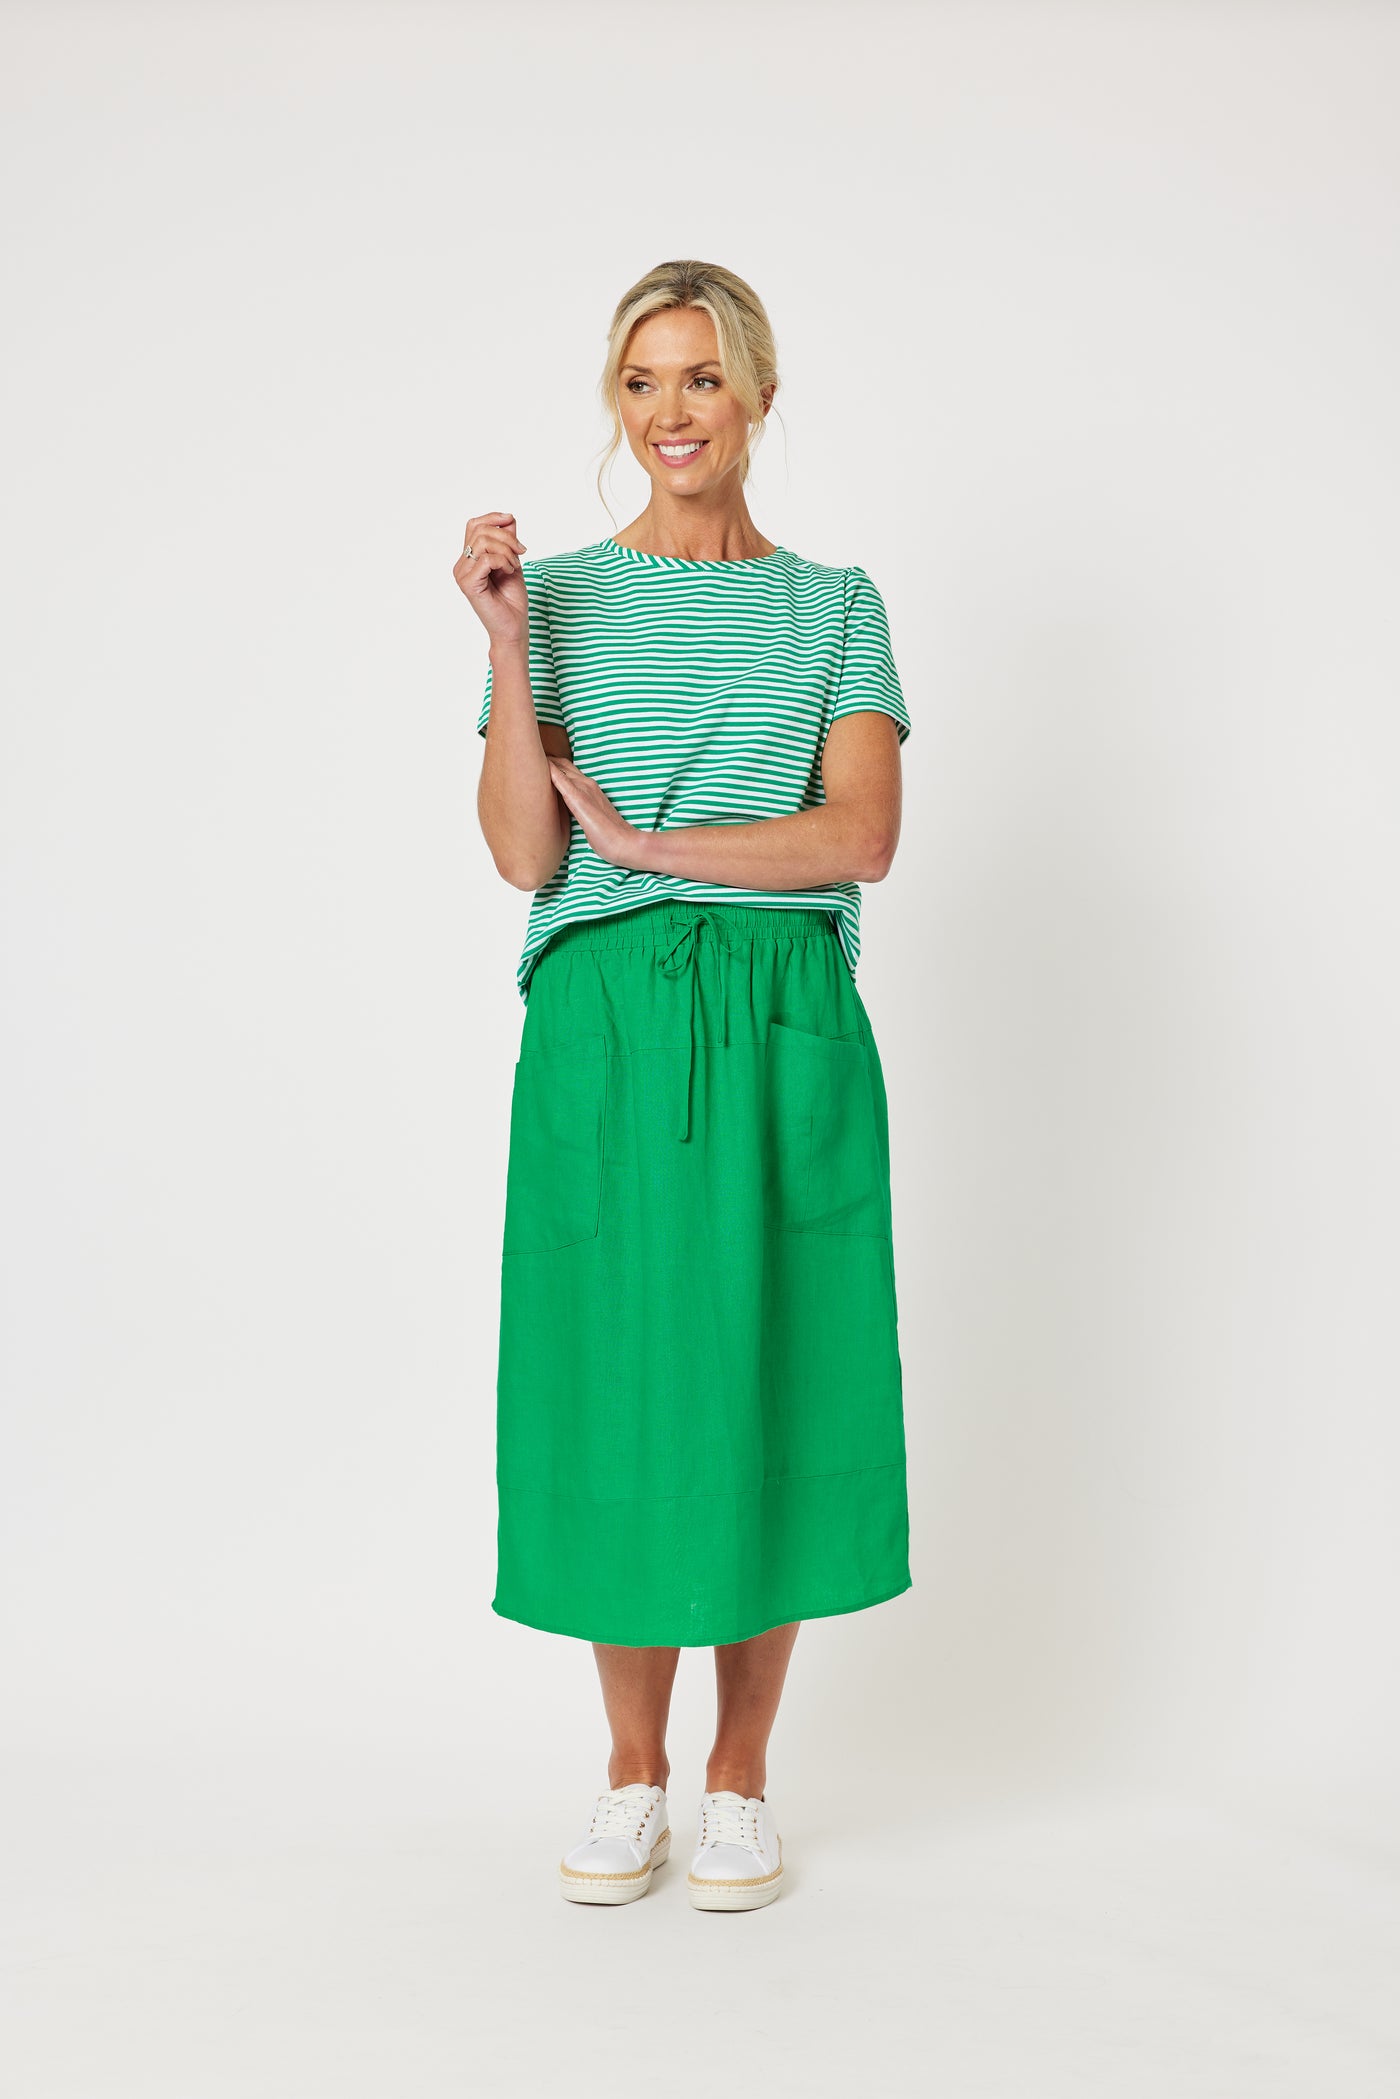 Sports Linen Skirt - Emerald